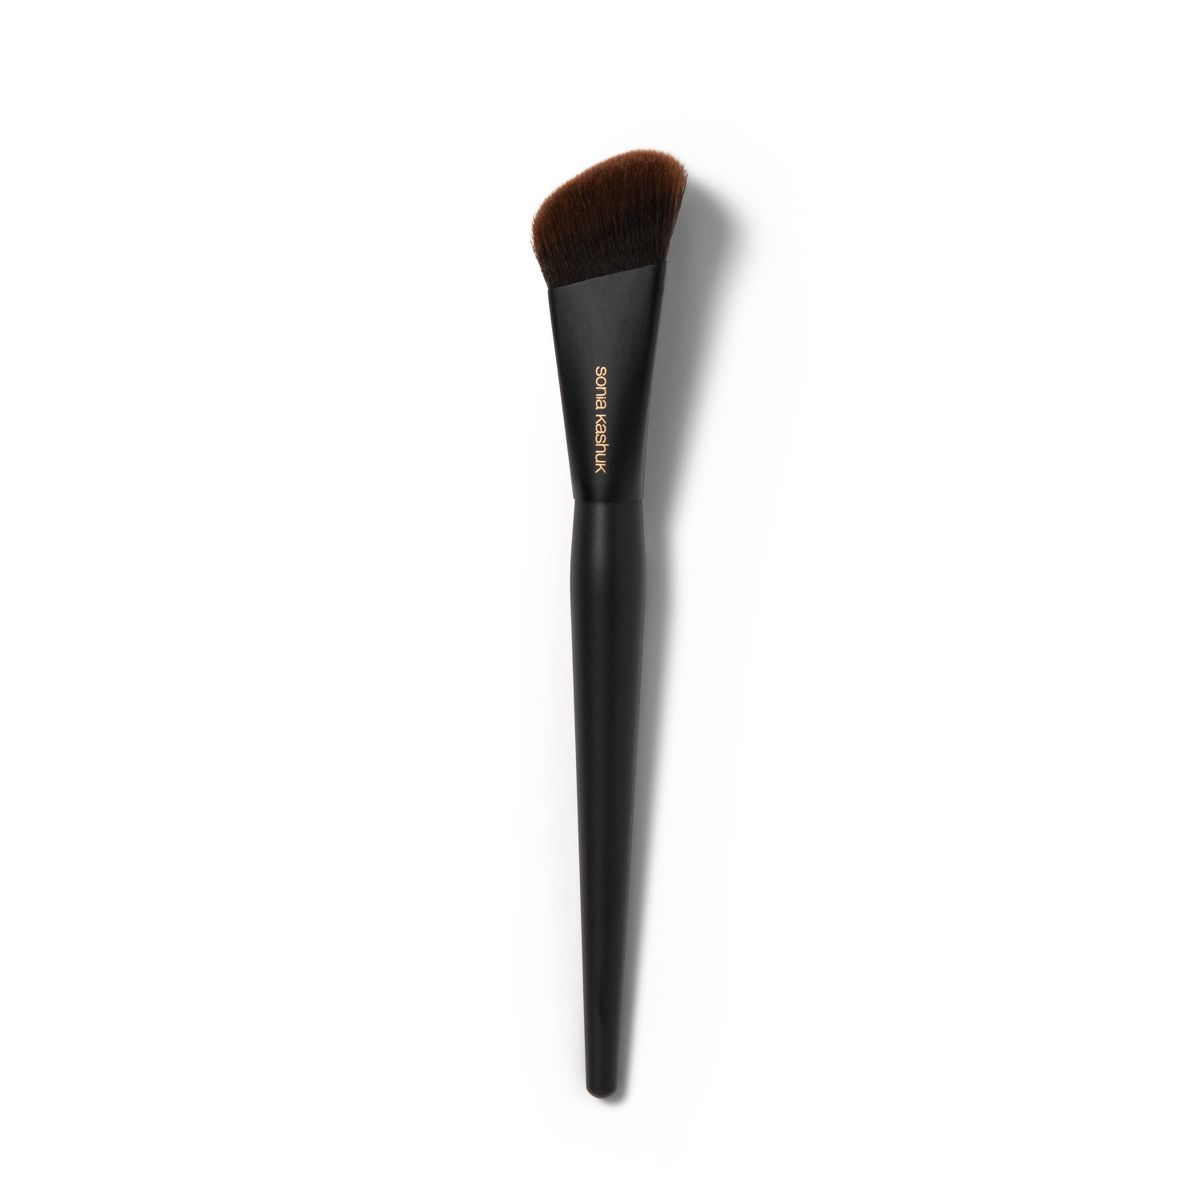 Sonia Kashuk™ Professional Pinnacle Makeup Brush - No. 130 | Target